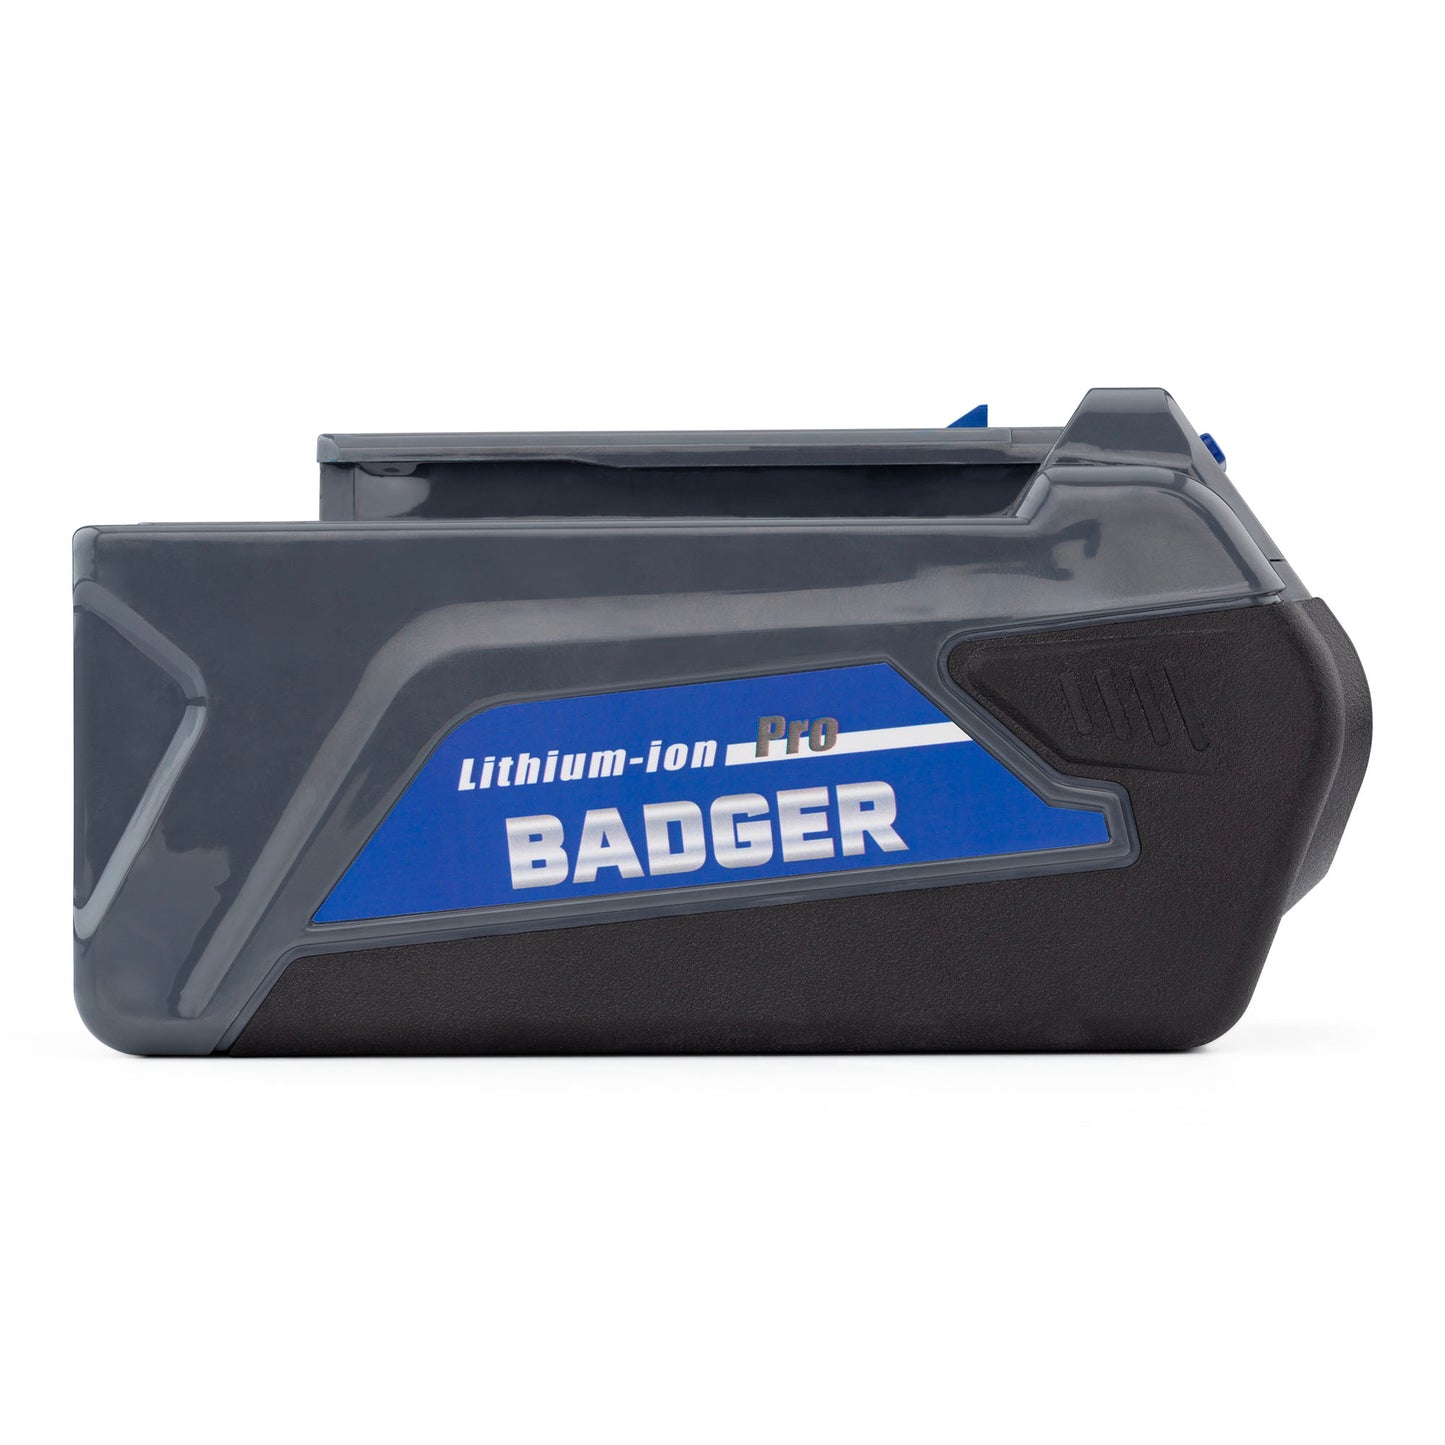 
                  
                    WILD BADGER POWER Battery,40 Volt 5.0Ah,Blue - WILD BADGER POWER
                  
                